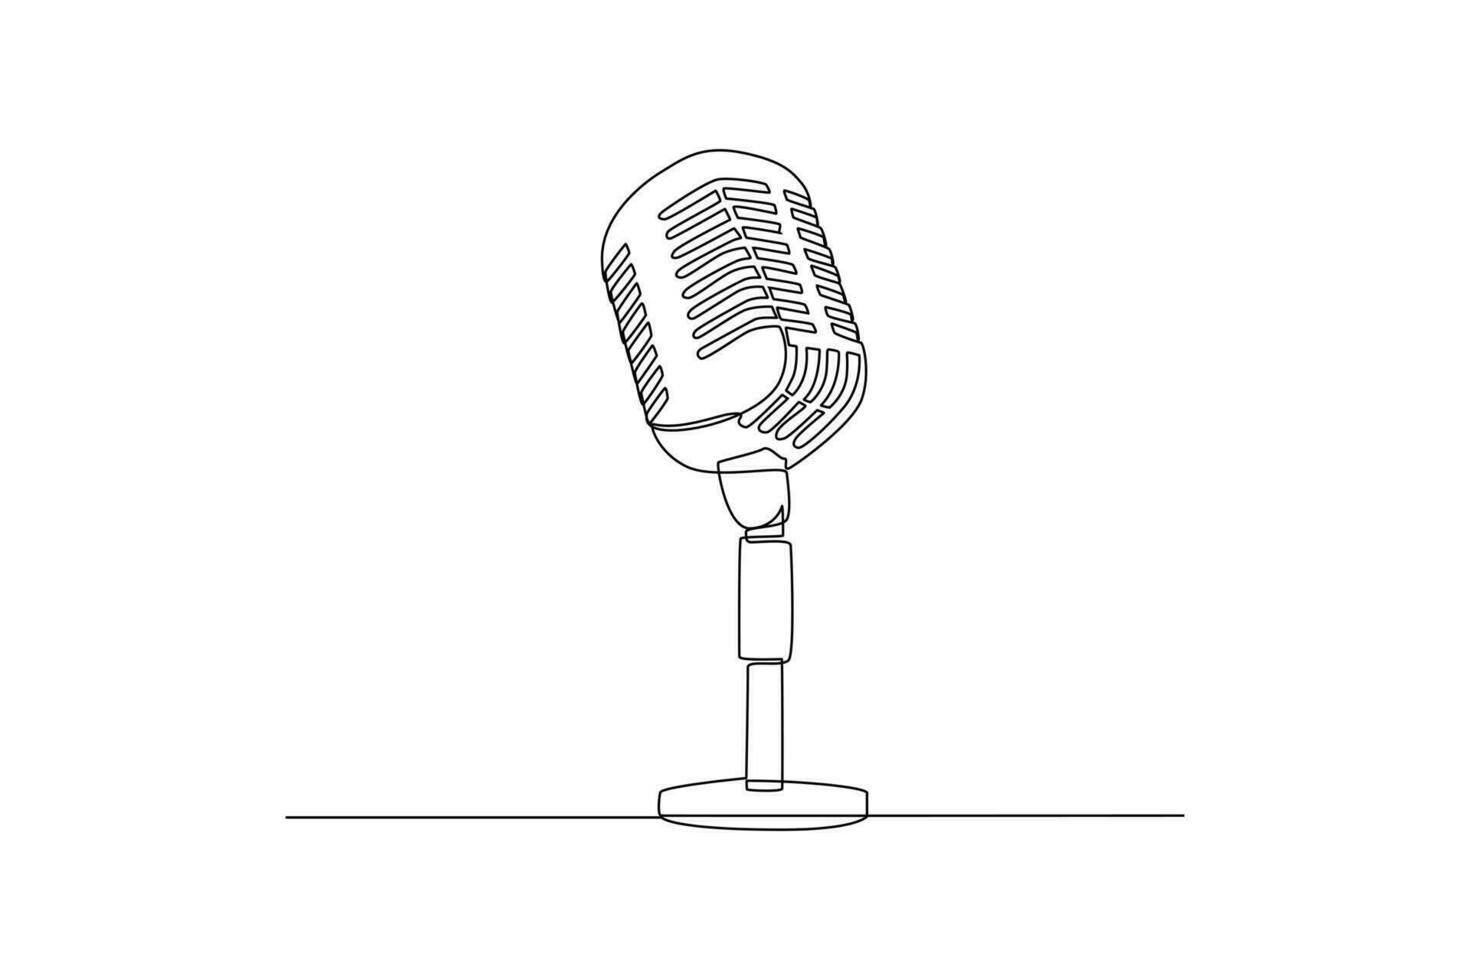 singolo uno linea disegno Podcast concetto. continuo linea disegnare design grafico vettore illustrazione.